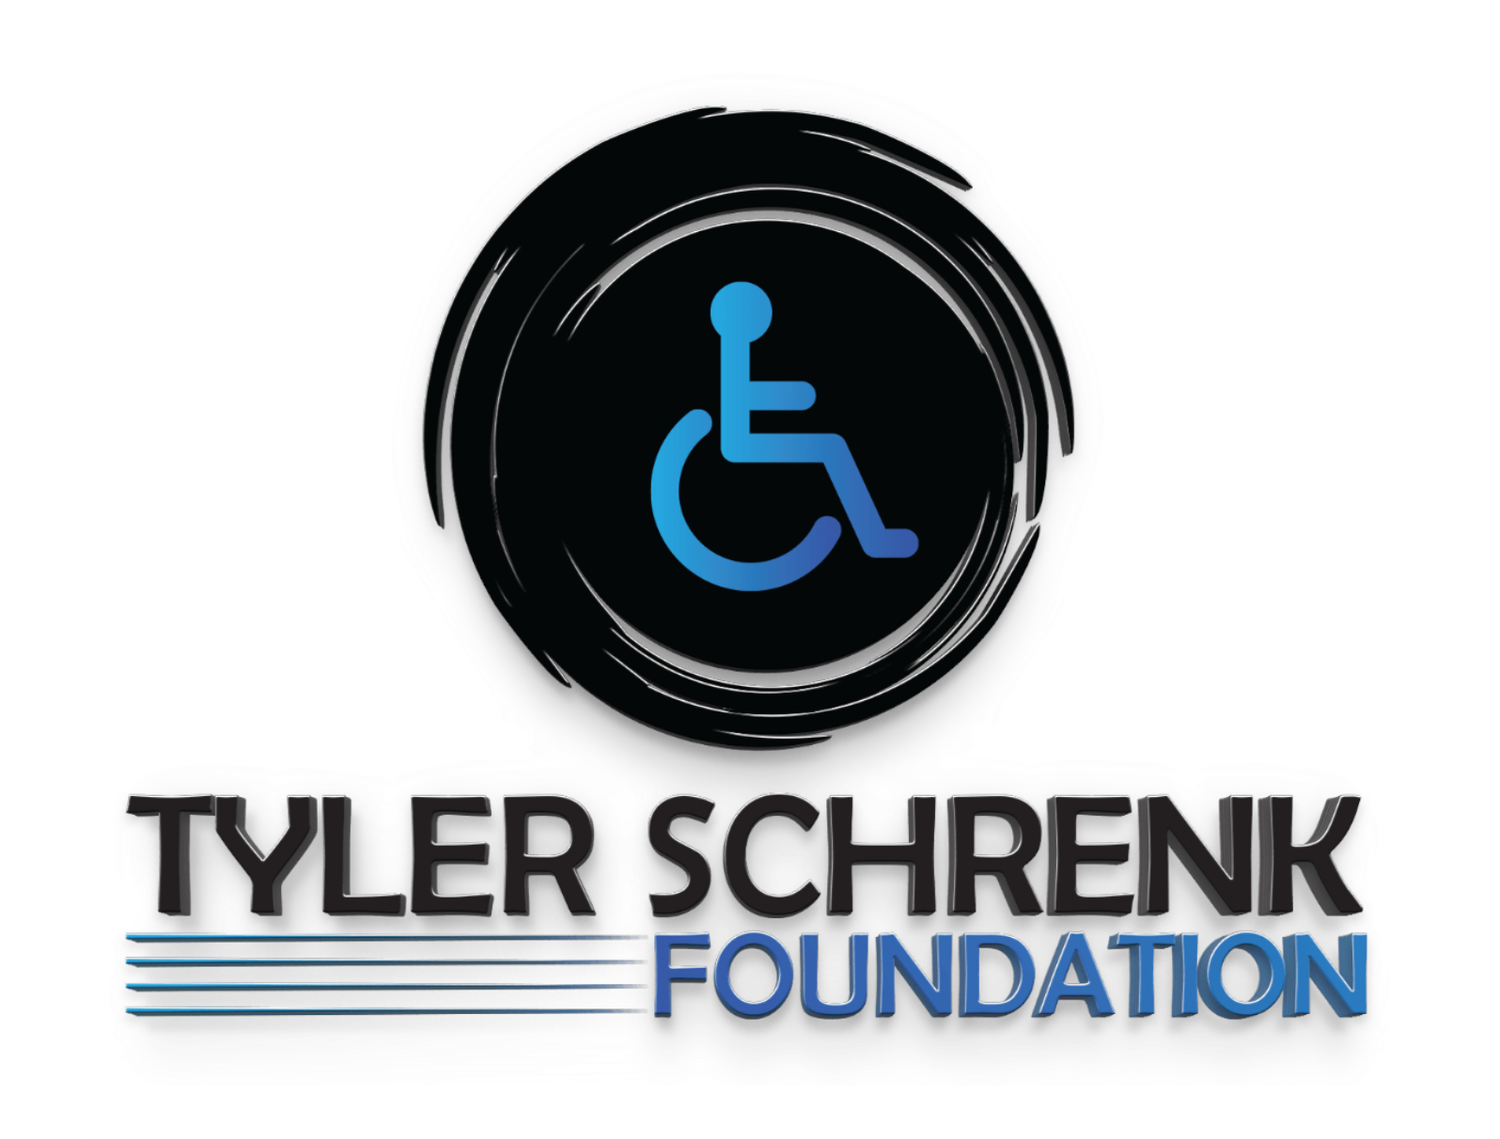 Tyler Schrenk Foundation